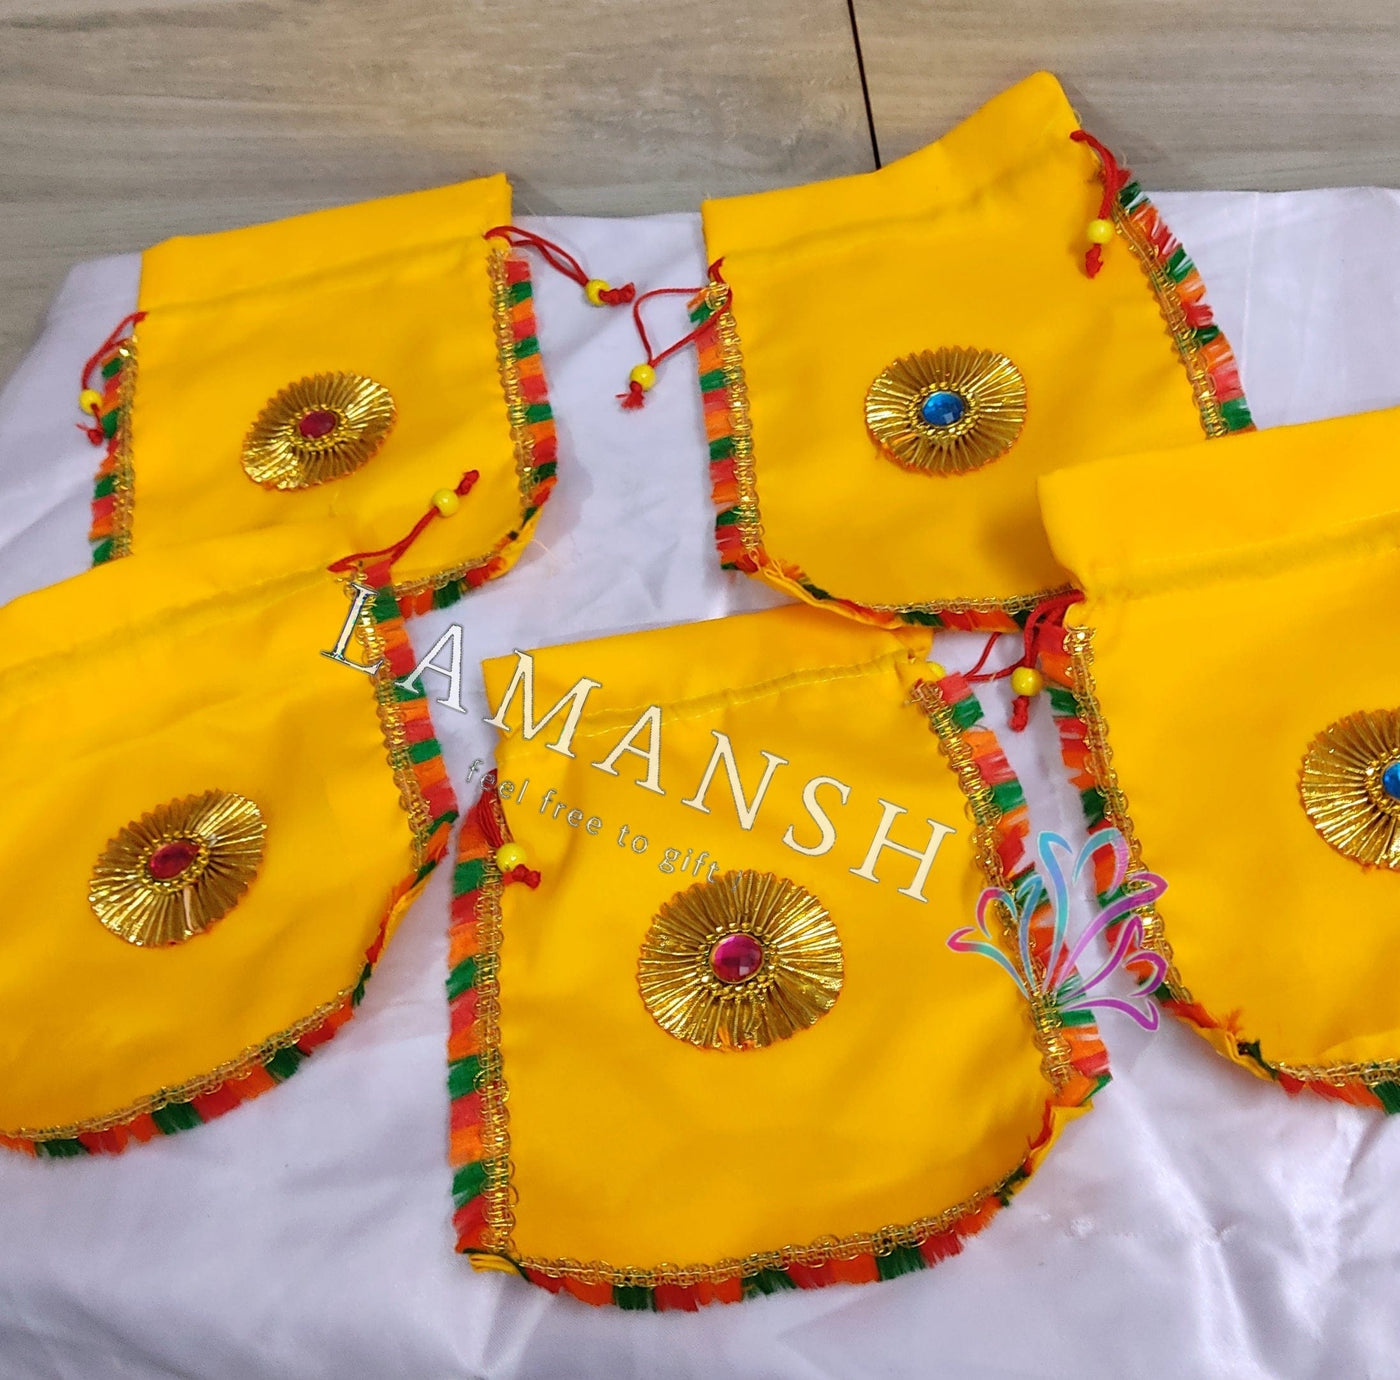 LAMANSH ® Women's Potli Bag LAMANSH Set of 10 (7*9 inch) Rajasthani Designer Potli Bags for Giveaways / Perfect for Gifting